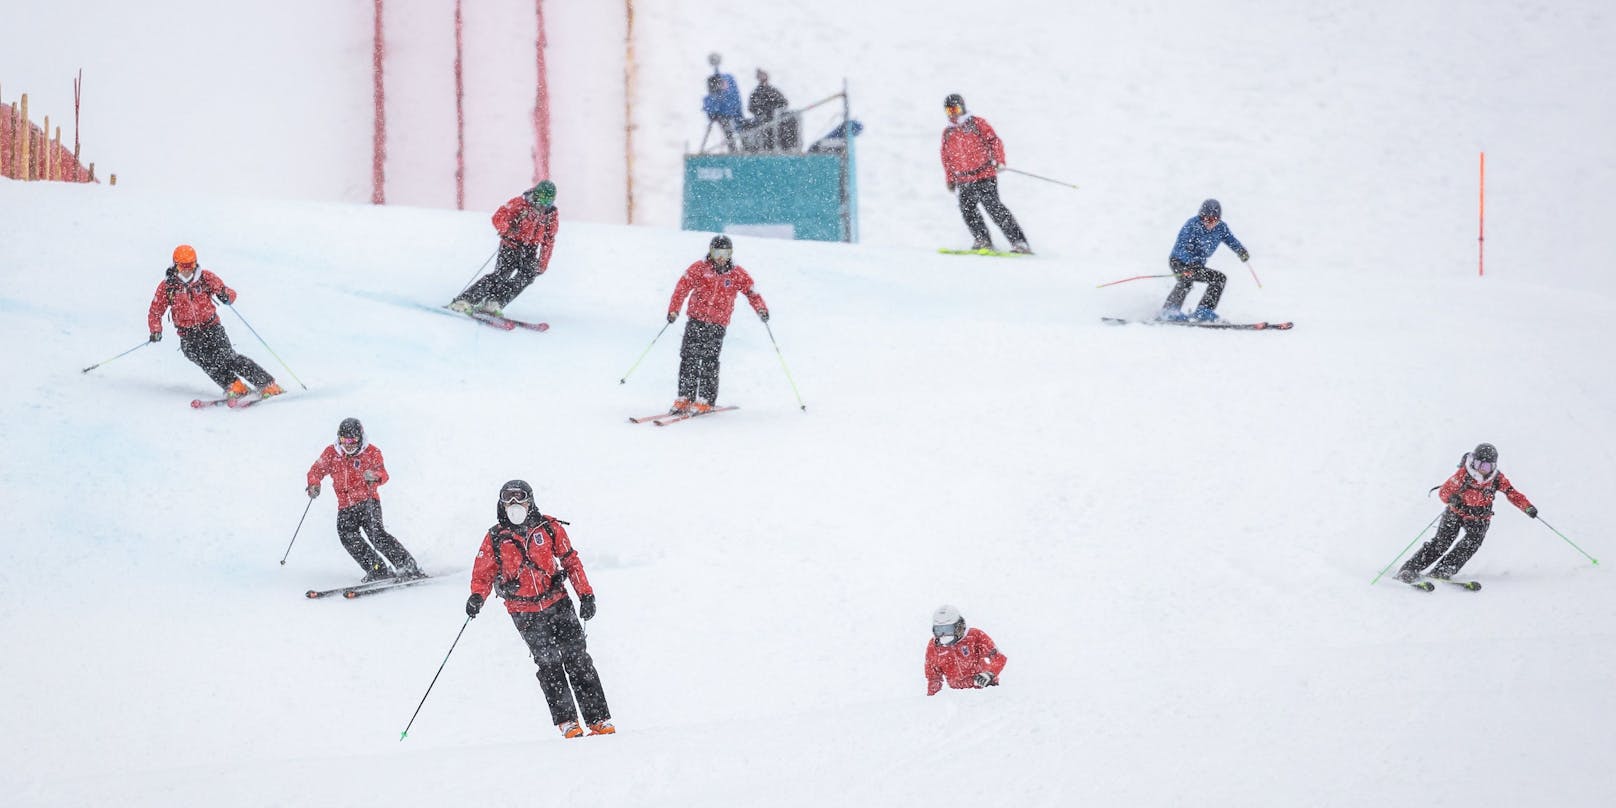 (Symbolbild) In Österreich gibt es zum wiederholten Male Corona-Cluster unter Skilehrern.